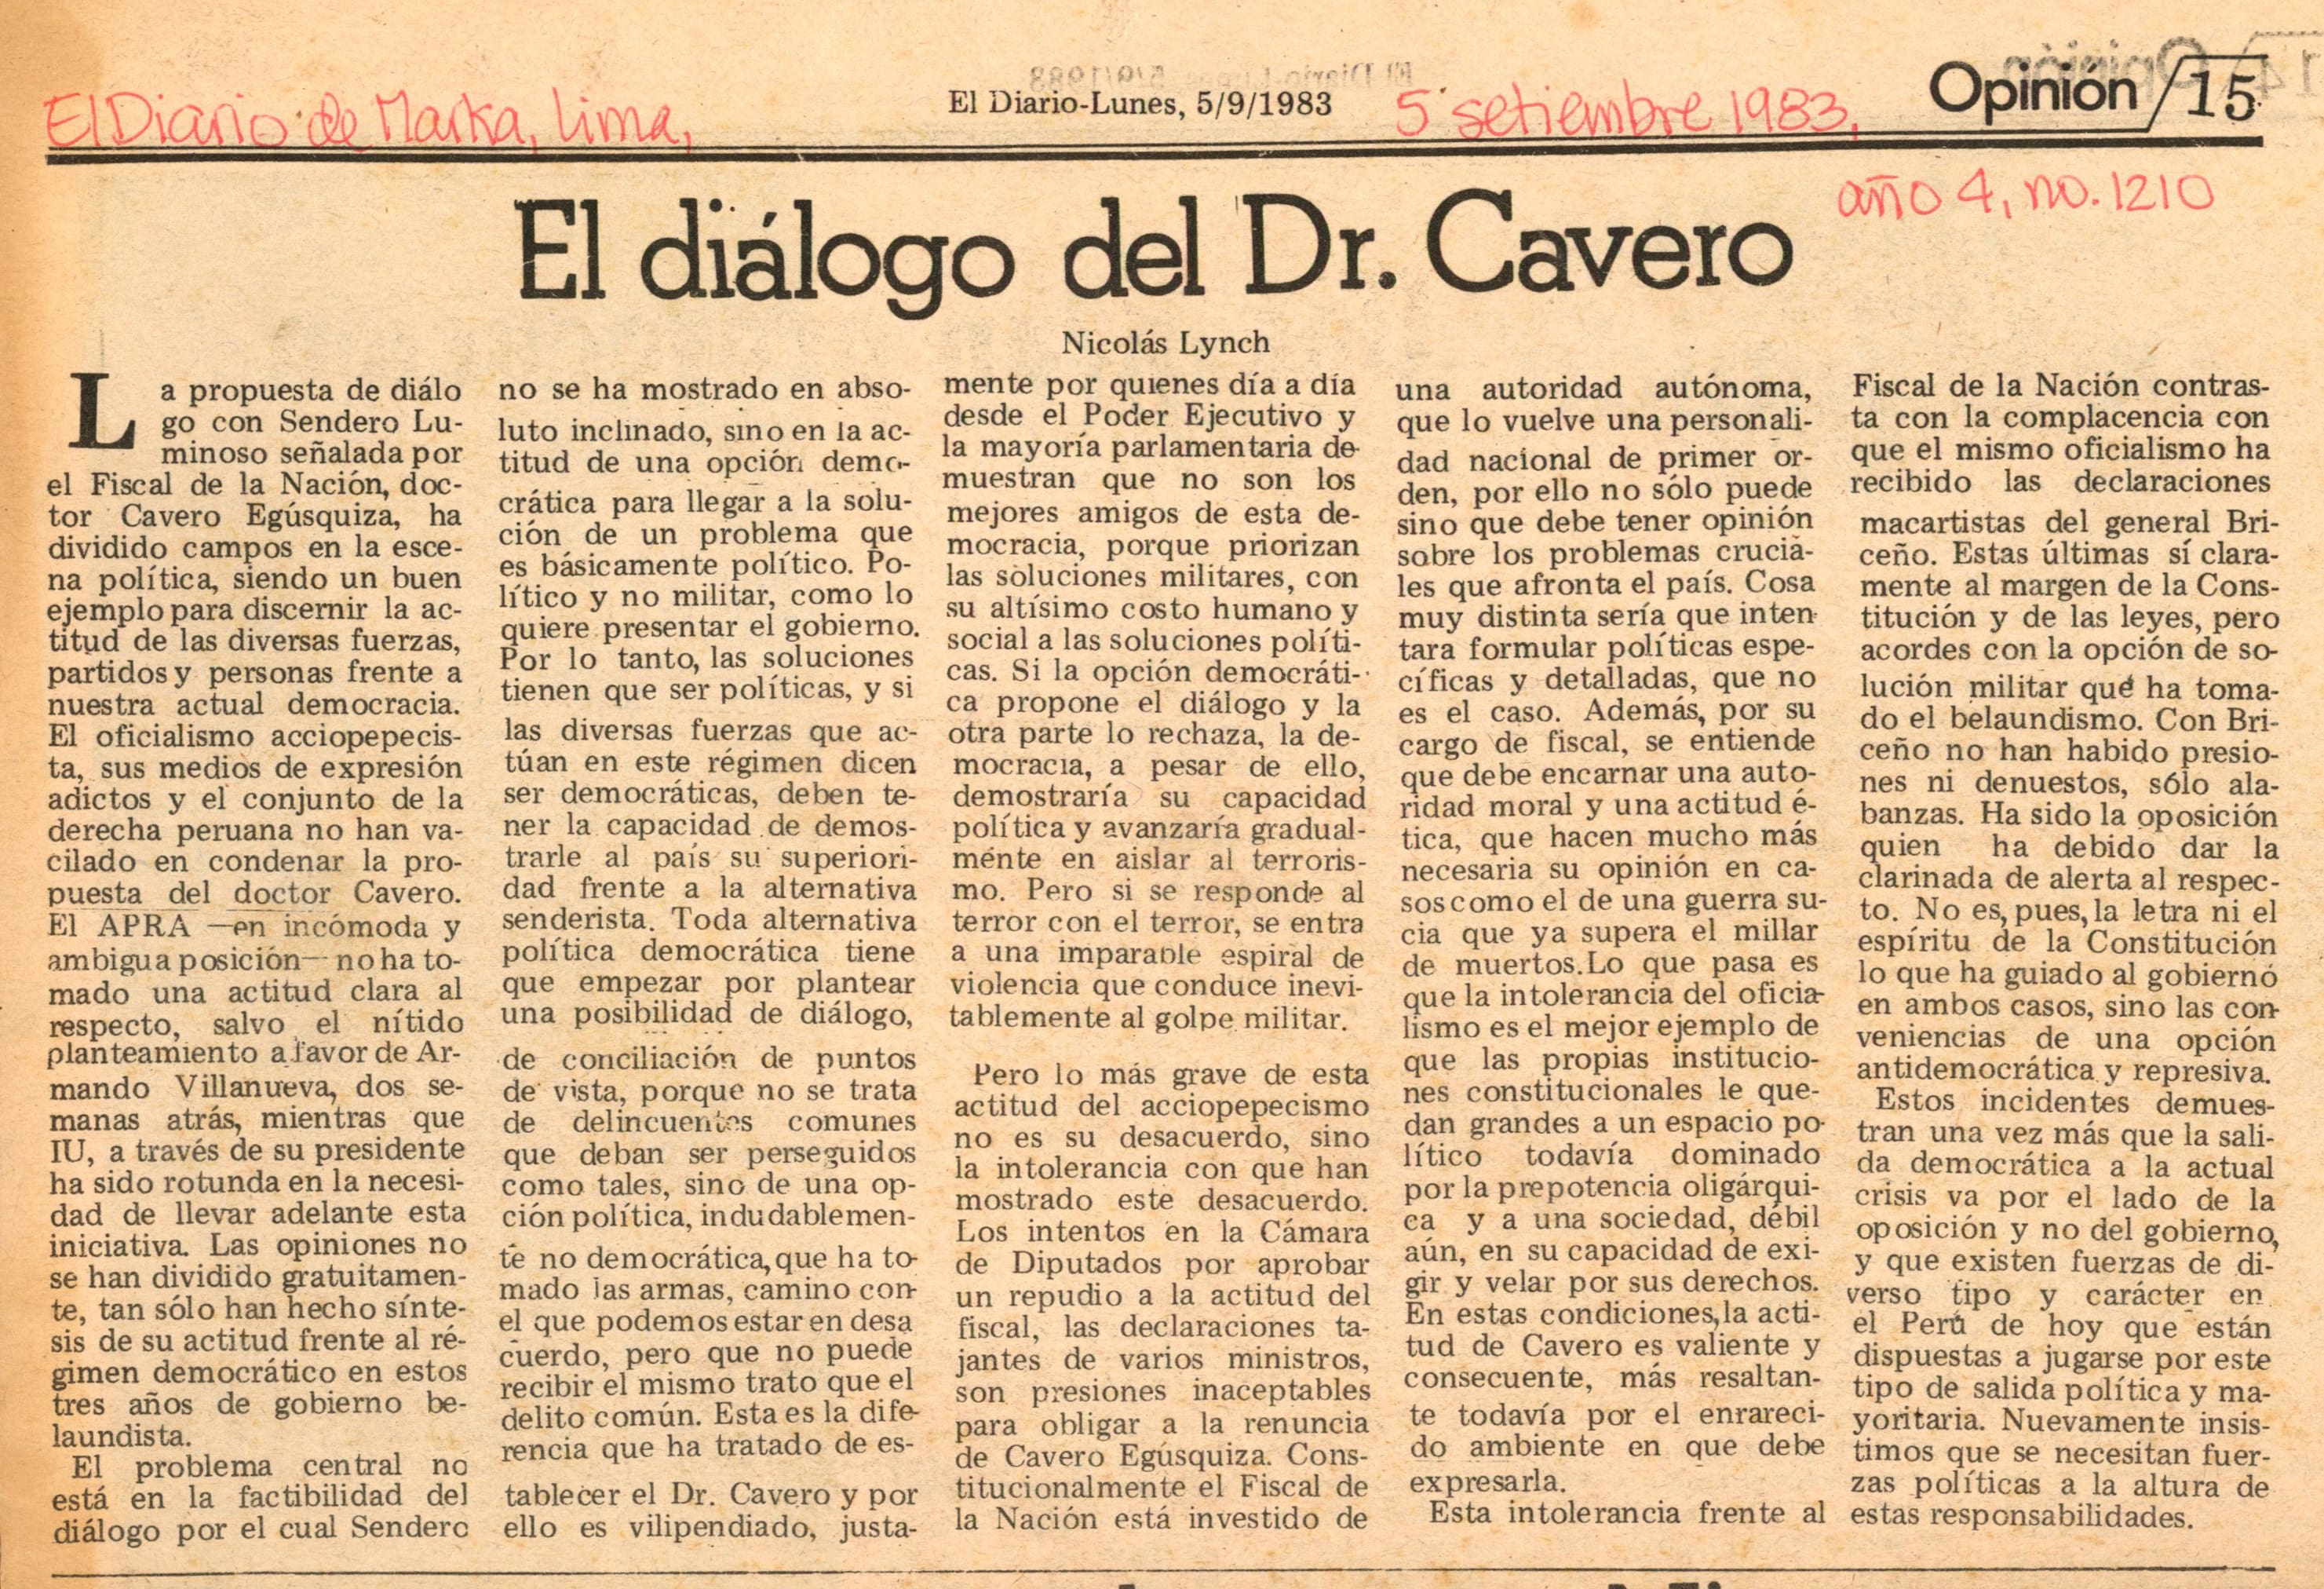 El diálogo del Dr. Cavero